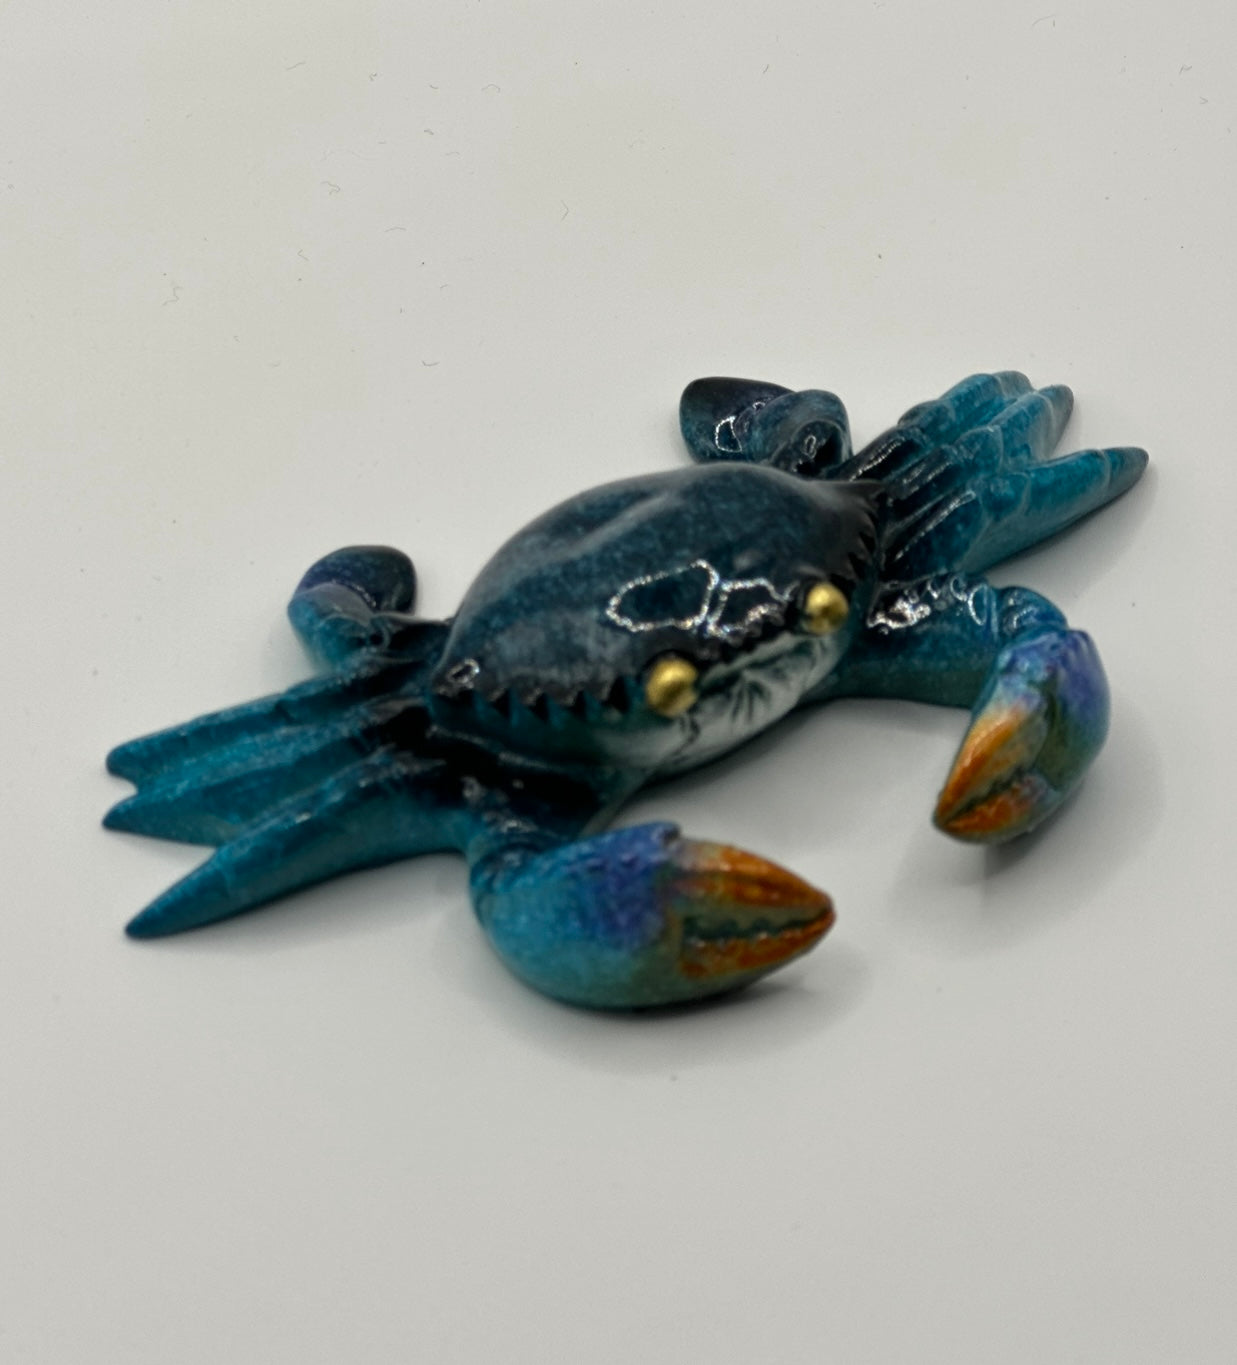 Bulk Q8 Blue Crab Figurine